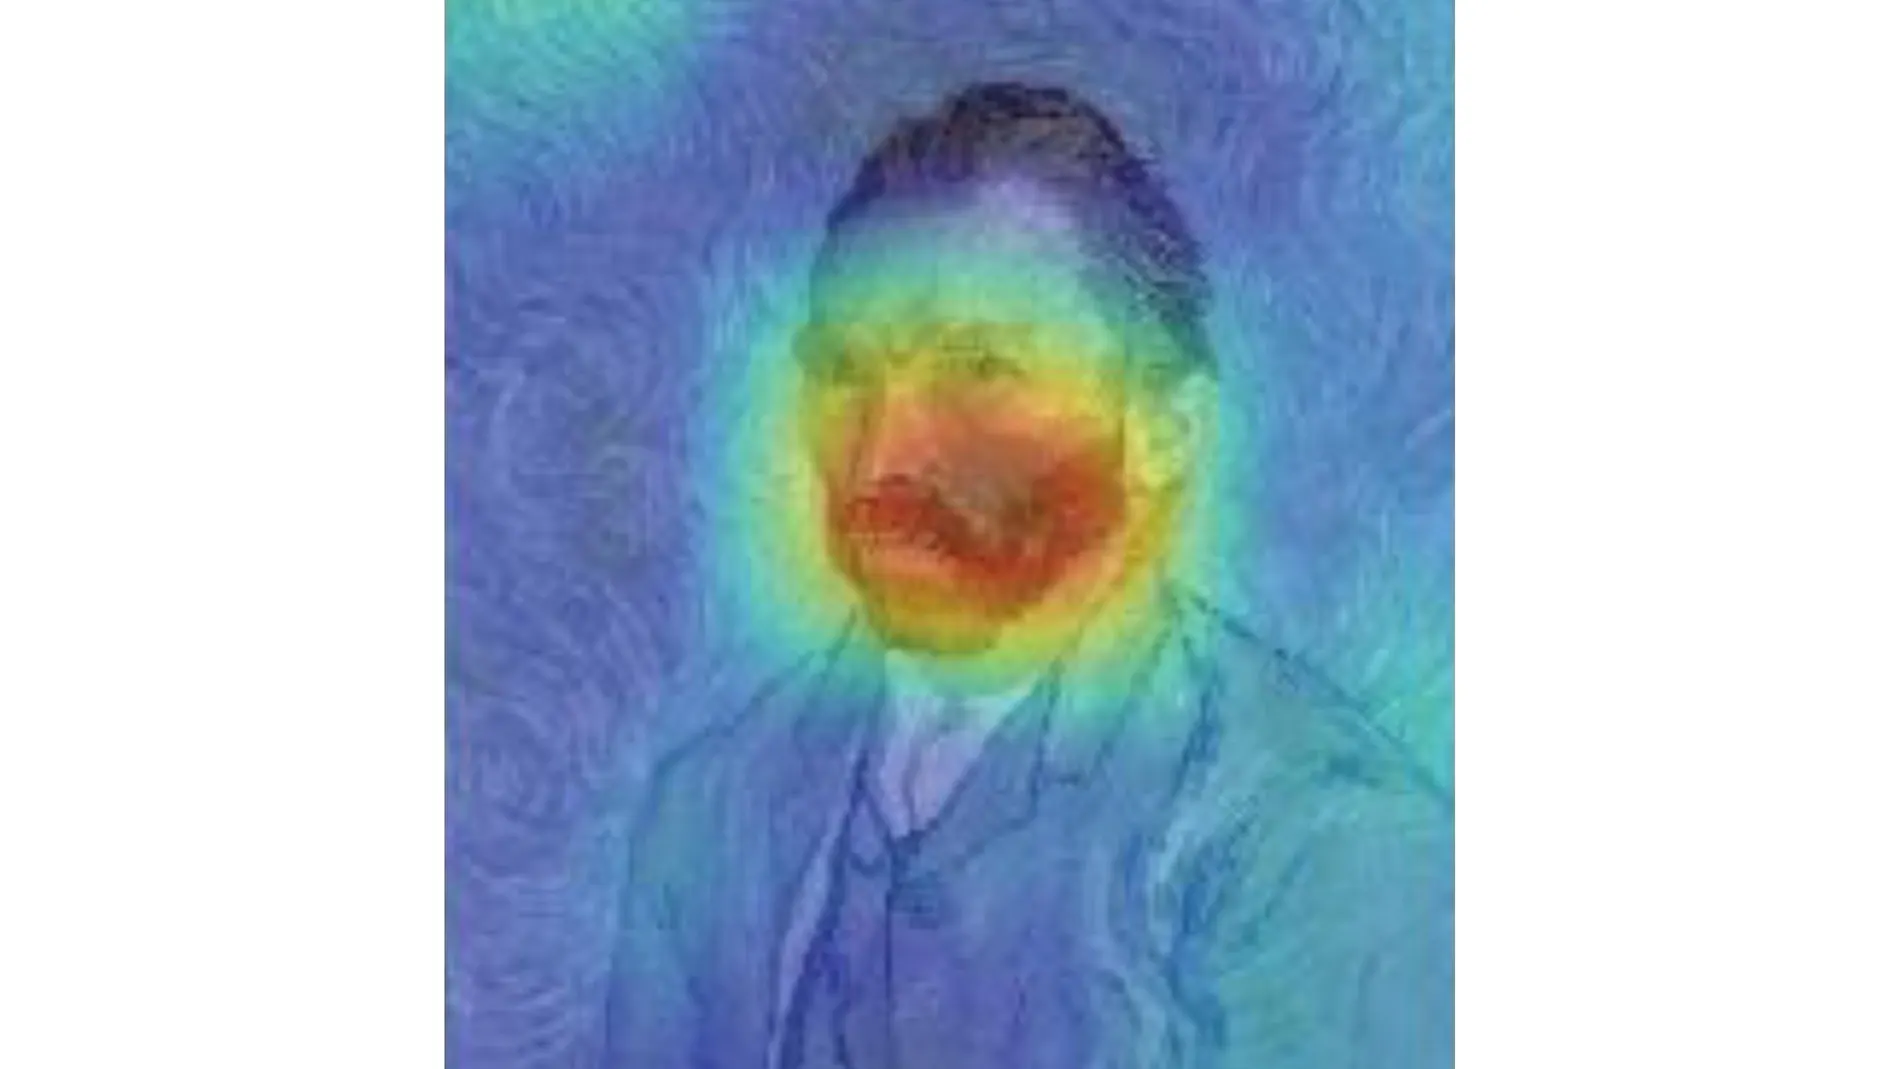 Imagen procesada del autorretrato de Van Gogh que resalta los píxeles relevantes para predecir el estilo postimpresionista del pintor.